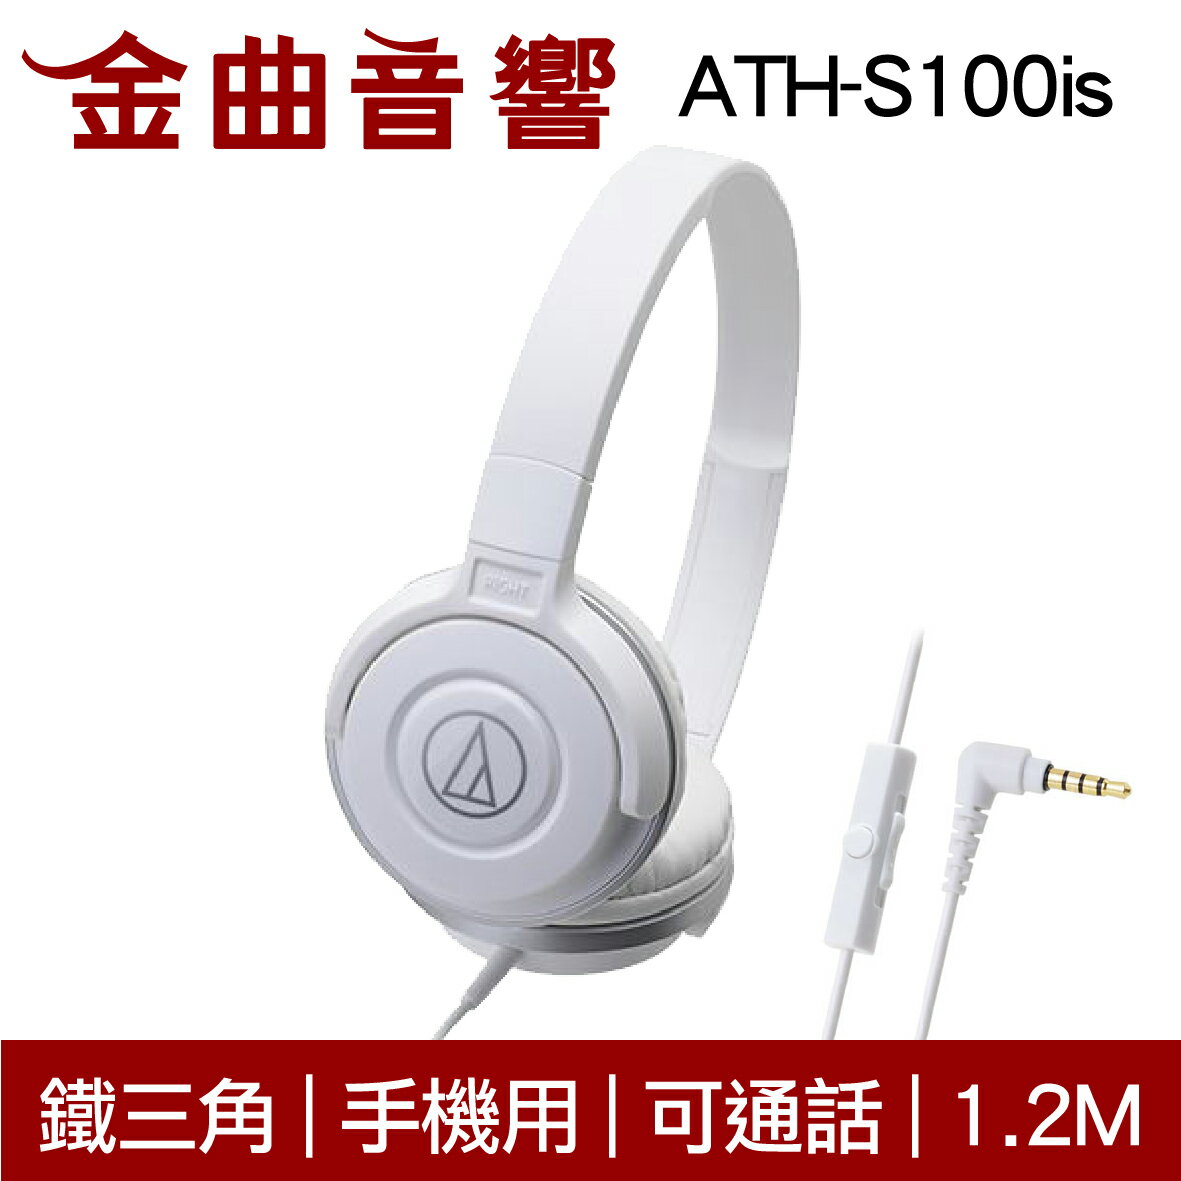 鐵三角 ATH-S100is 白色 兒童耳機 大人 皆適用 耳罩式耳機 麥克風版 IOS/安卓適用 | 金曲音響